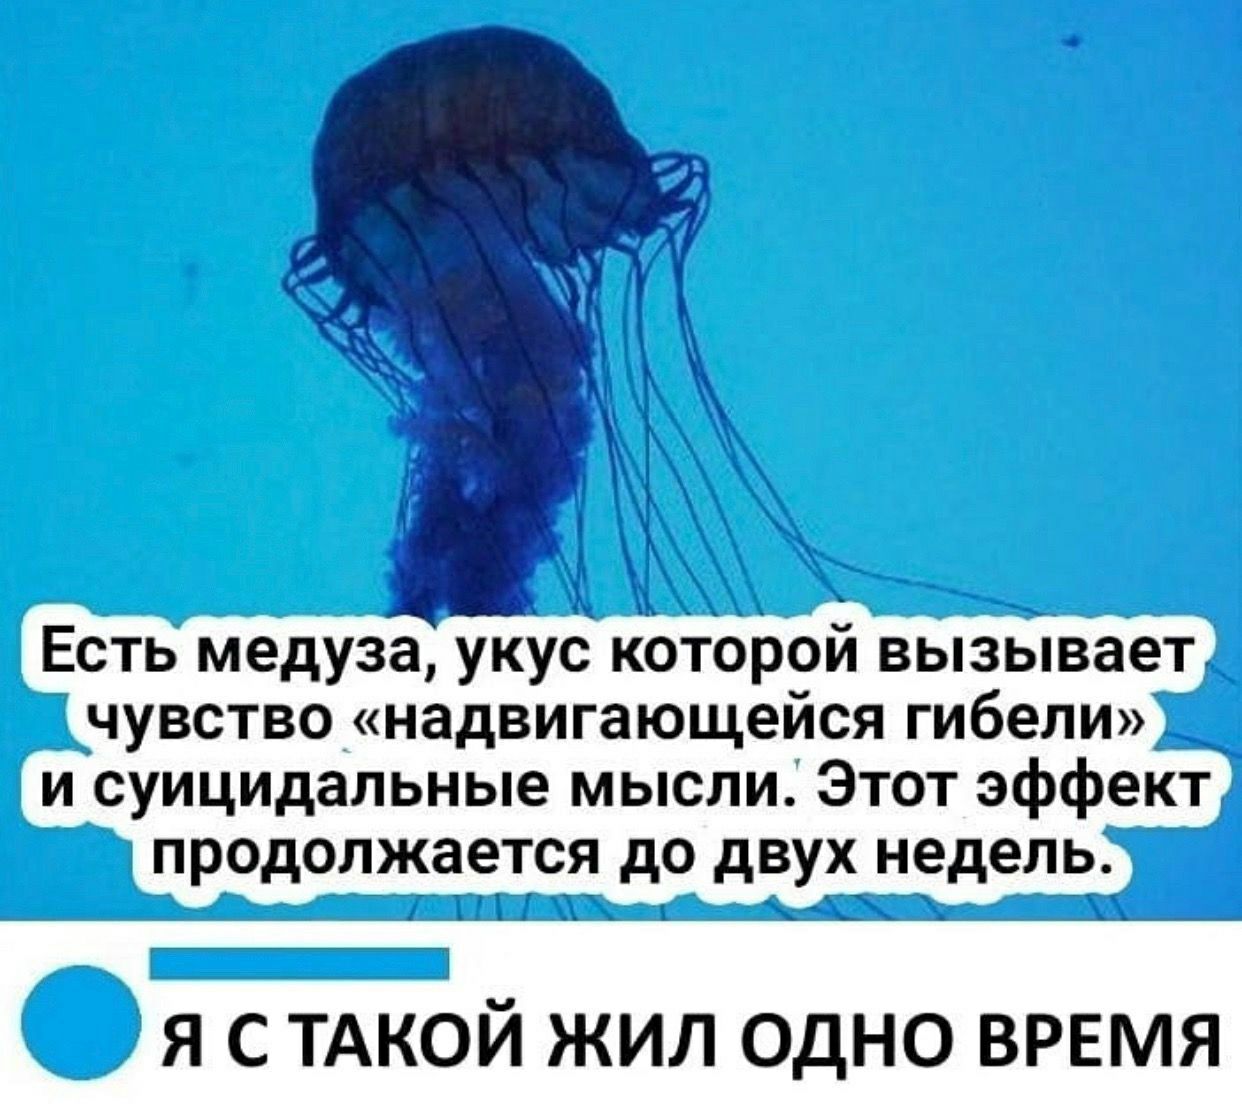 Своими карими глазами жалит как медуза песня. Медуза которая вызывает чувство надвигающейся гибели. Медуза суицидальные мысли. Медуза Мем. Укус медузы вызывает чувство надвигающейся гибели.